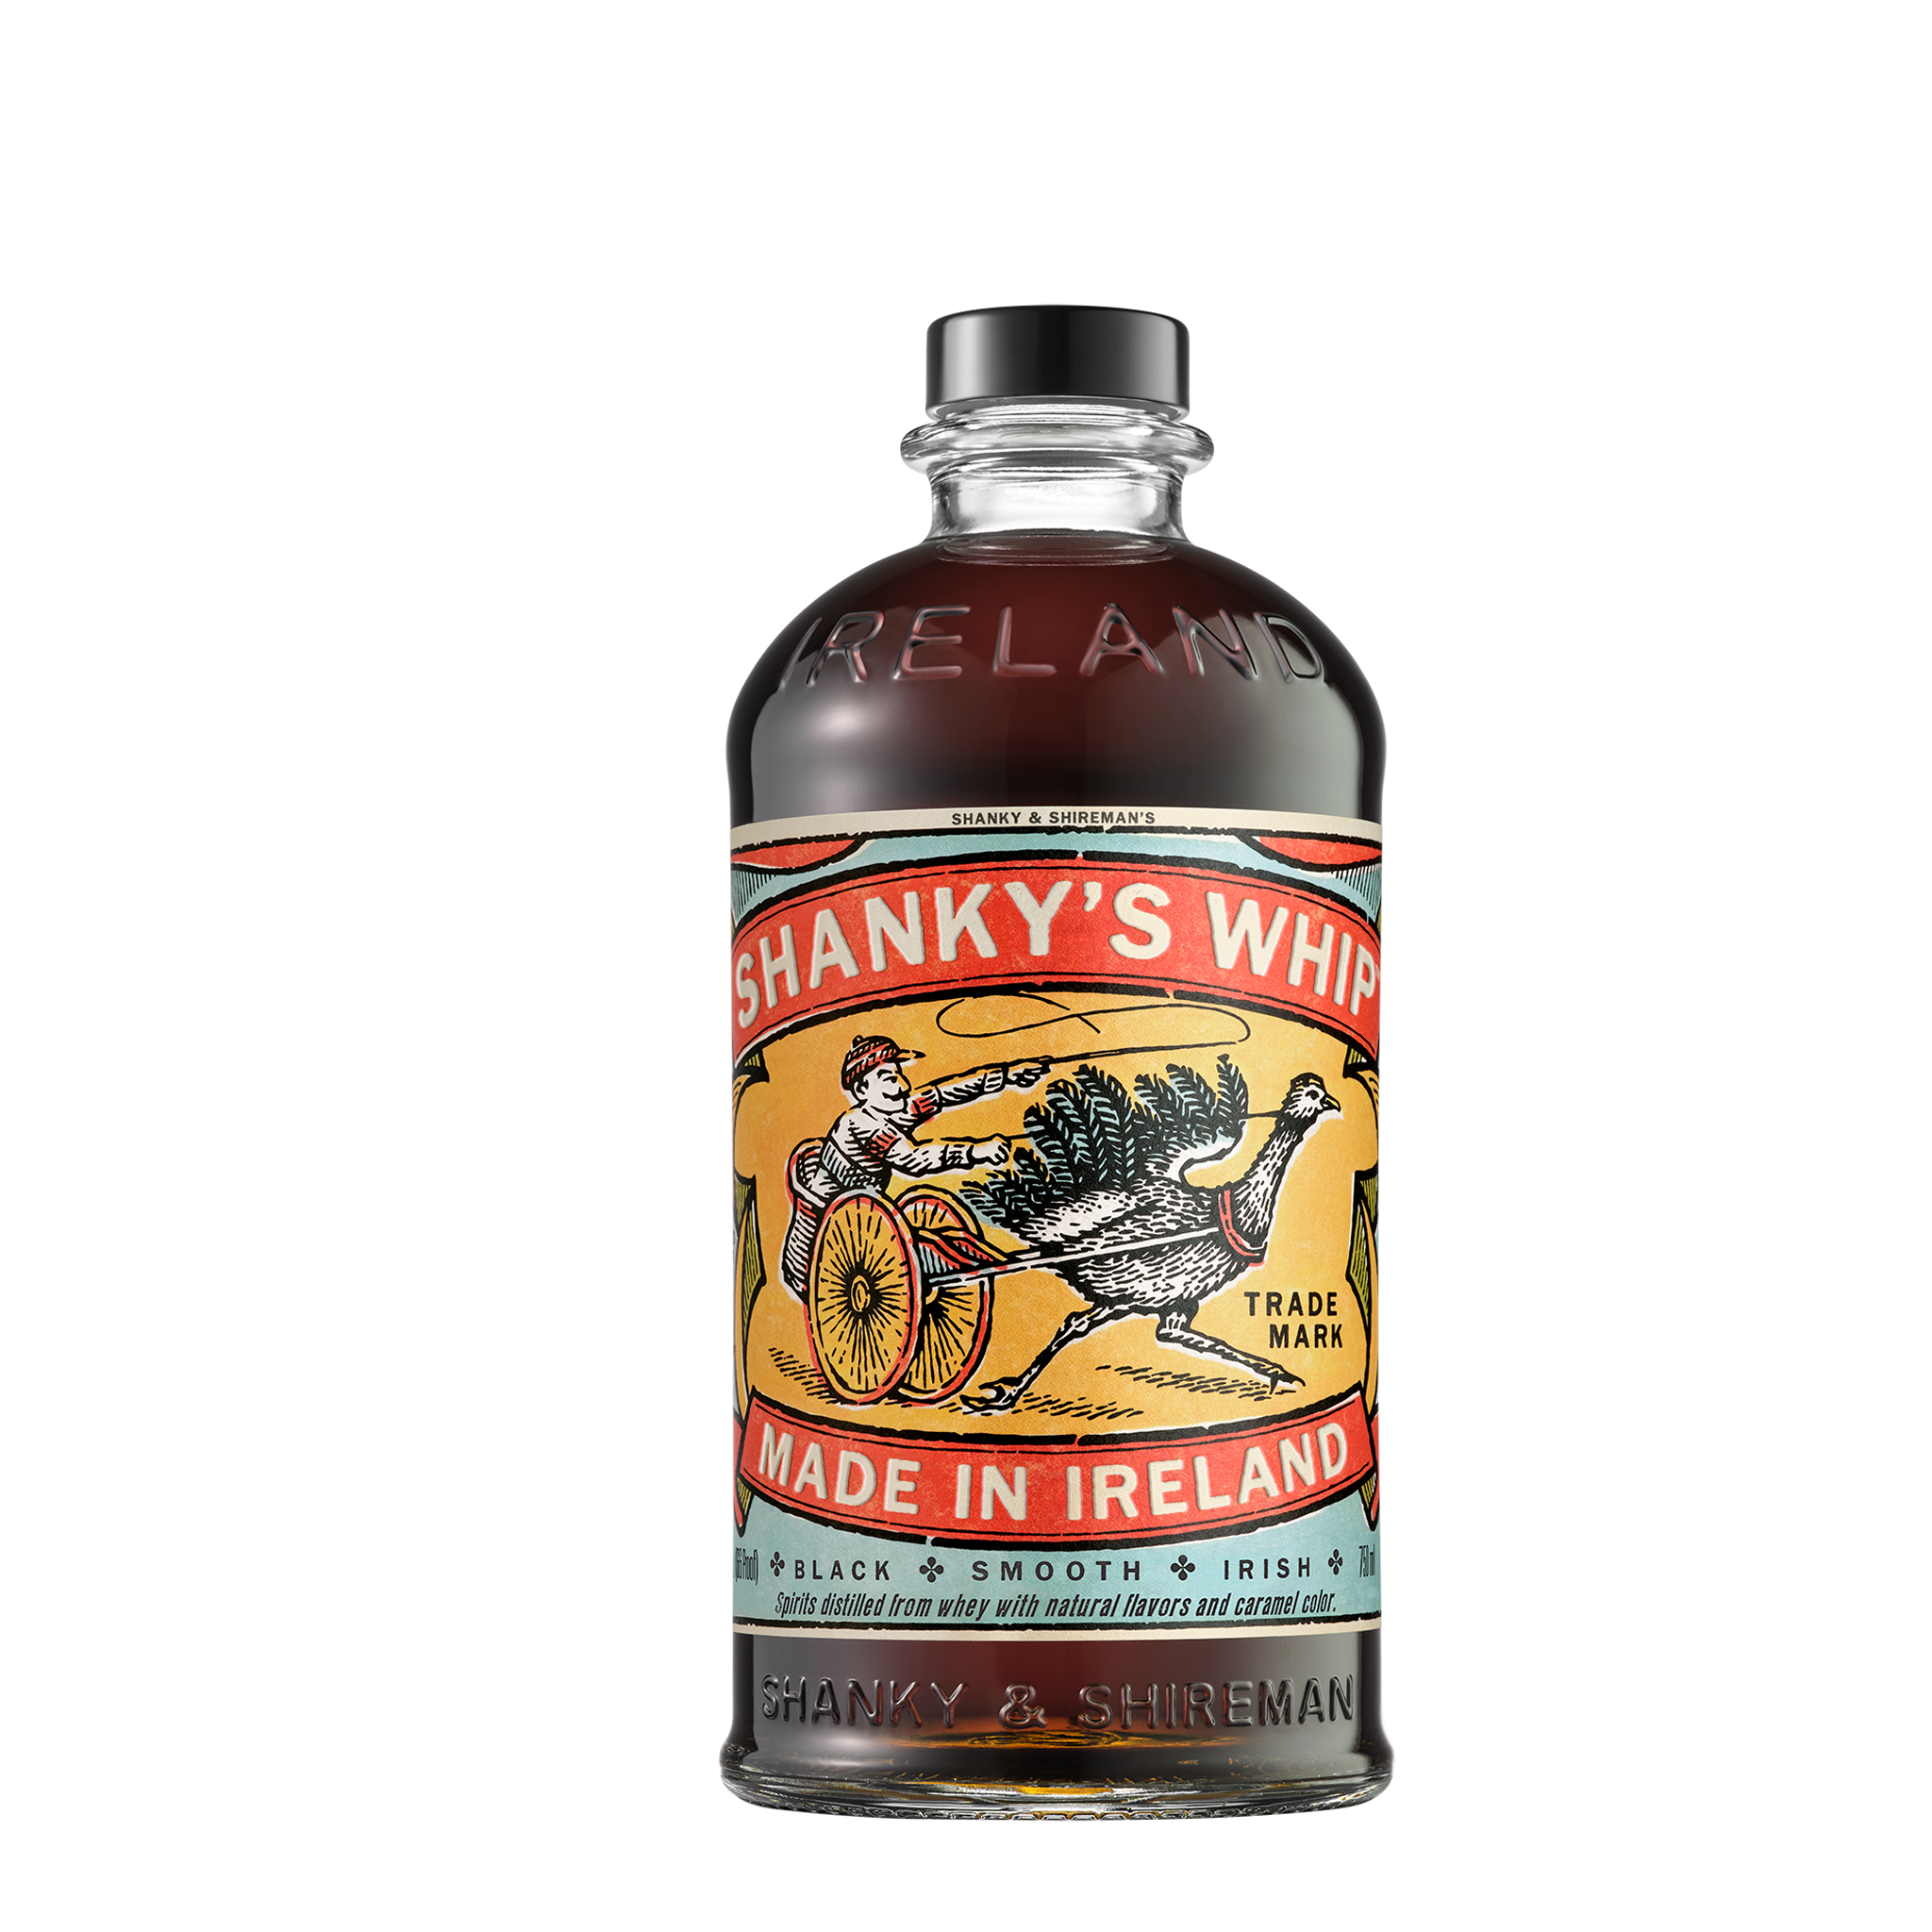 Shanky's Whip 'Bottle' Tin Sign